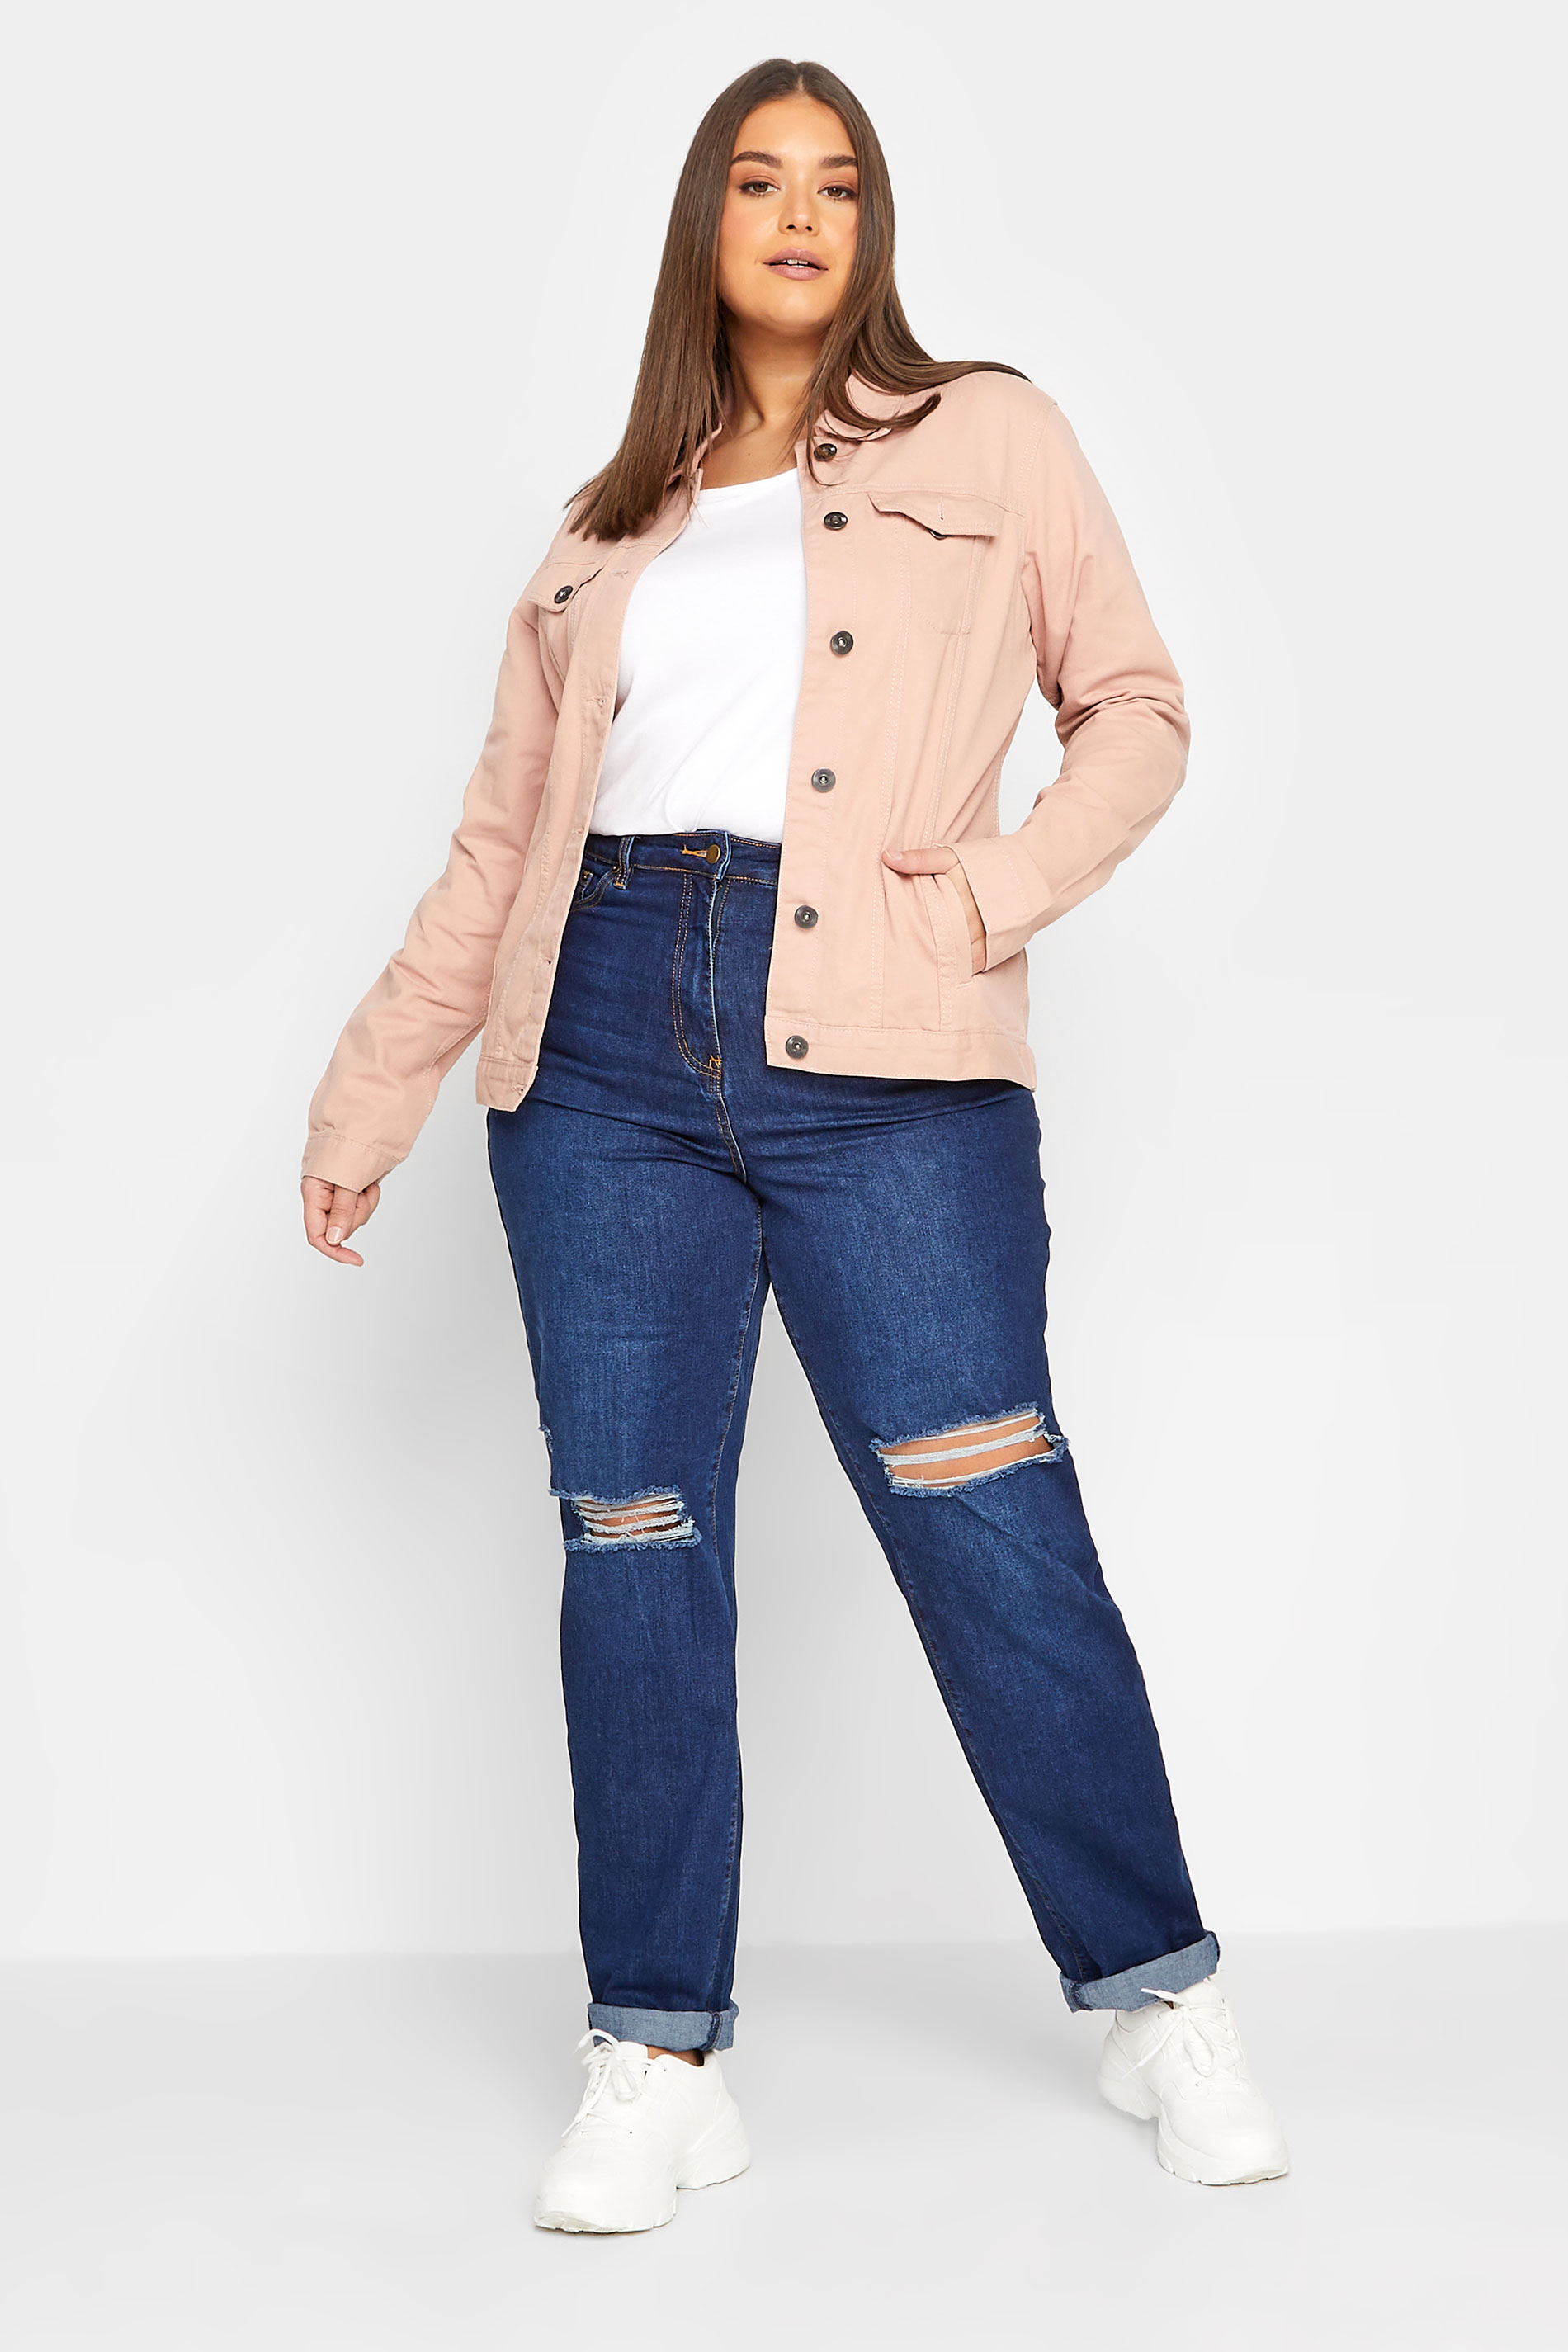 LTS Tall Women's Pink Twill Denim Jacket | Long Tall Sally  2